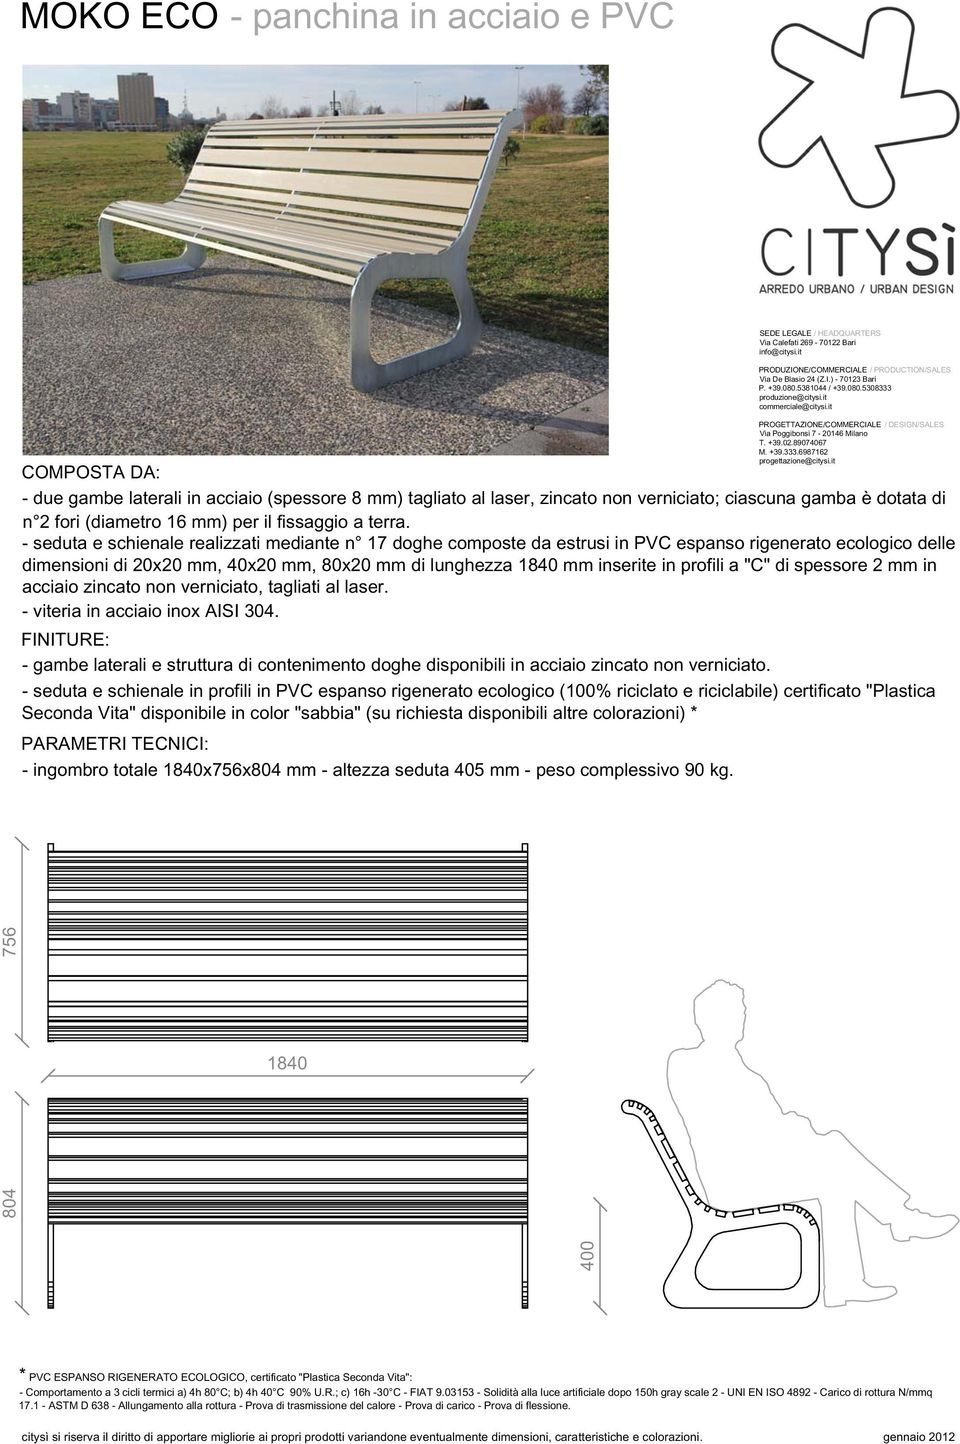 it commerciale@citysi.it PROGETTAZIONE/COMMERCIALE / DESIGN/SALES Via Poggibonsi 7-20146 Milano T. +39.02.89074067 M. +39.333.6987162 progettazione@citysi.